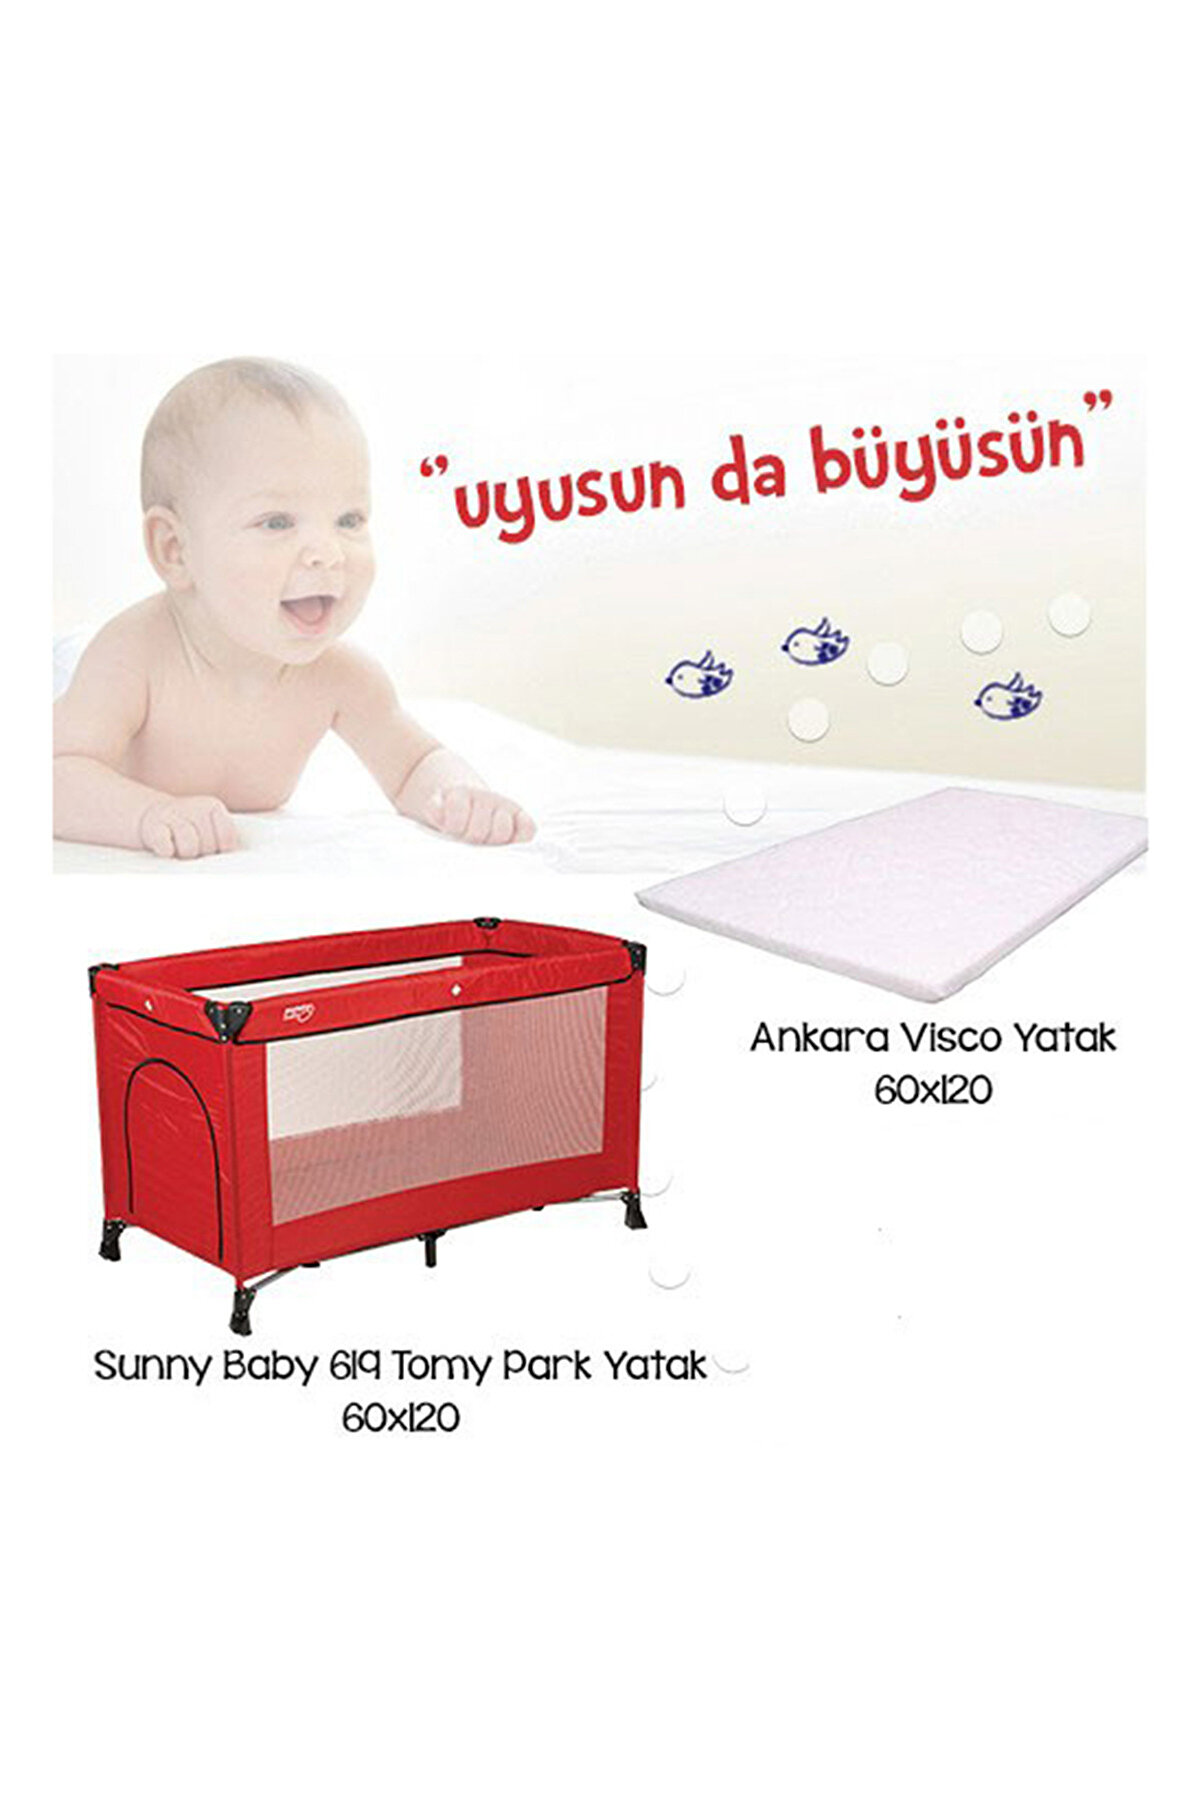 Sunny Baby 619 Tommy Park Yatak Kampanyası Kırmızı /